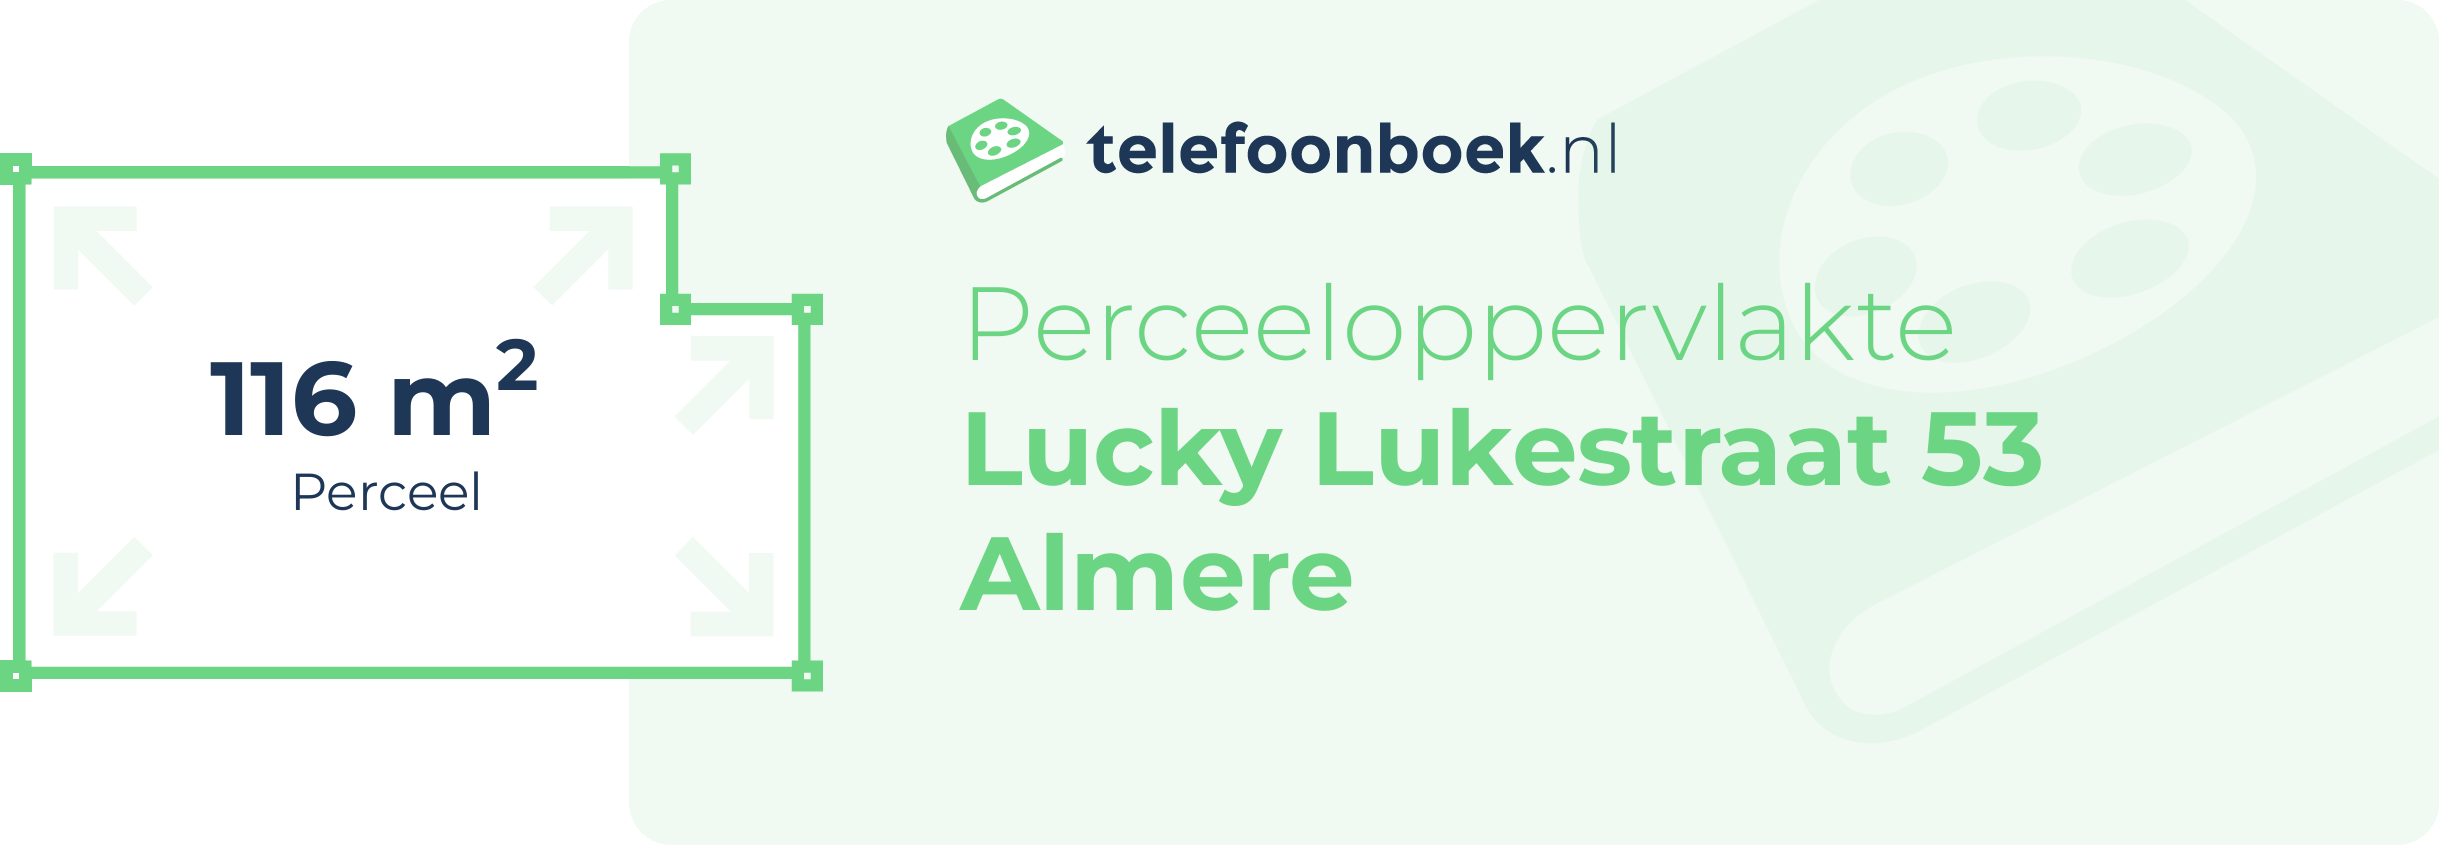 Perceeloppervlakte Lucky Lukestraat 53 Almere